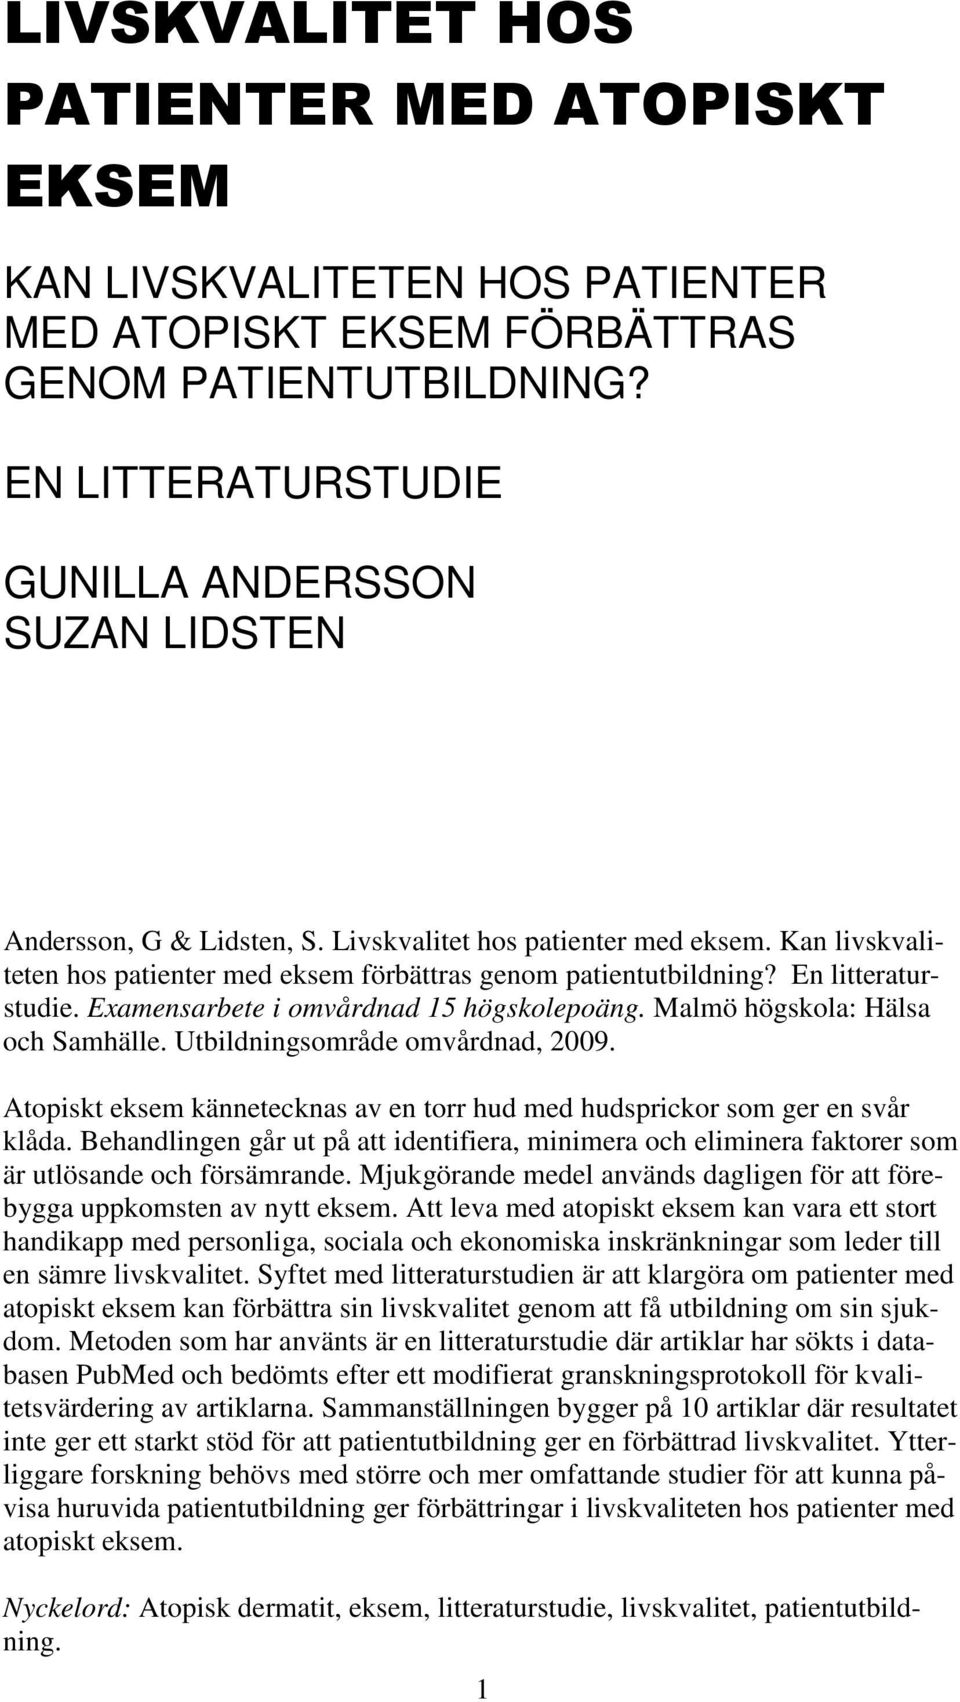 En litteraturstudie. Examensarbete i omvårdnad 15 högskolepoäng. Malmö högskola: Hälsa och Samhälle. Utbildningsområde omvårdnad, 2009.